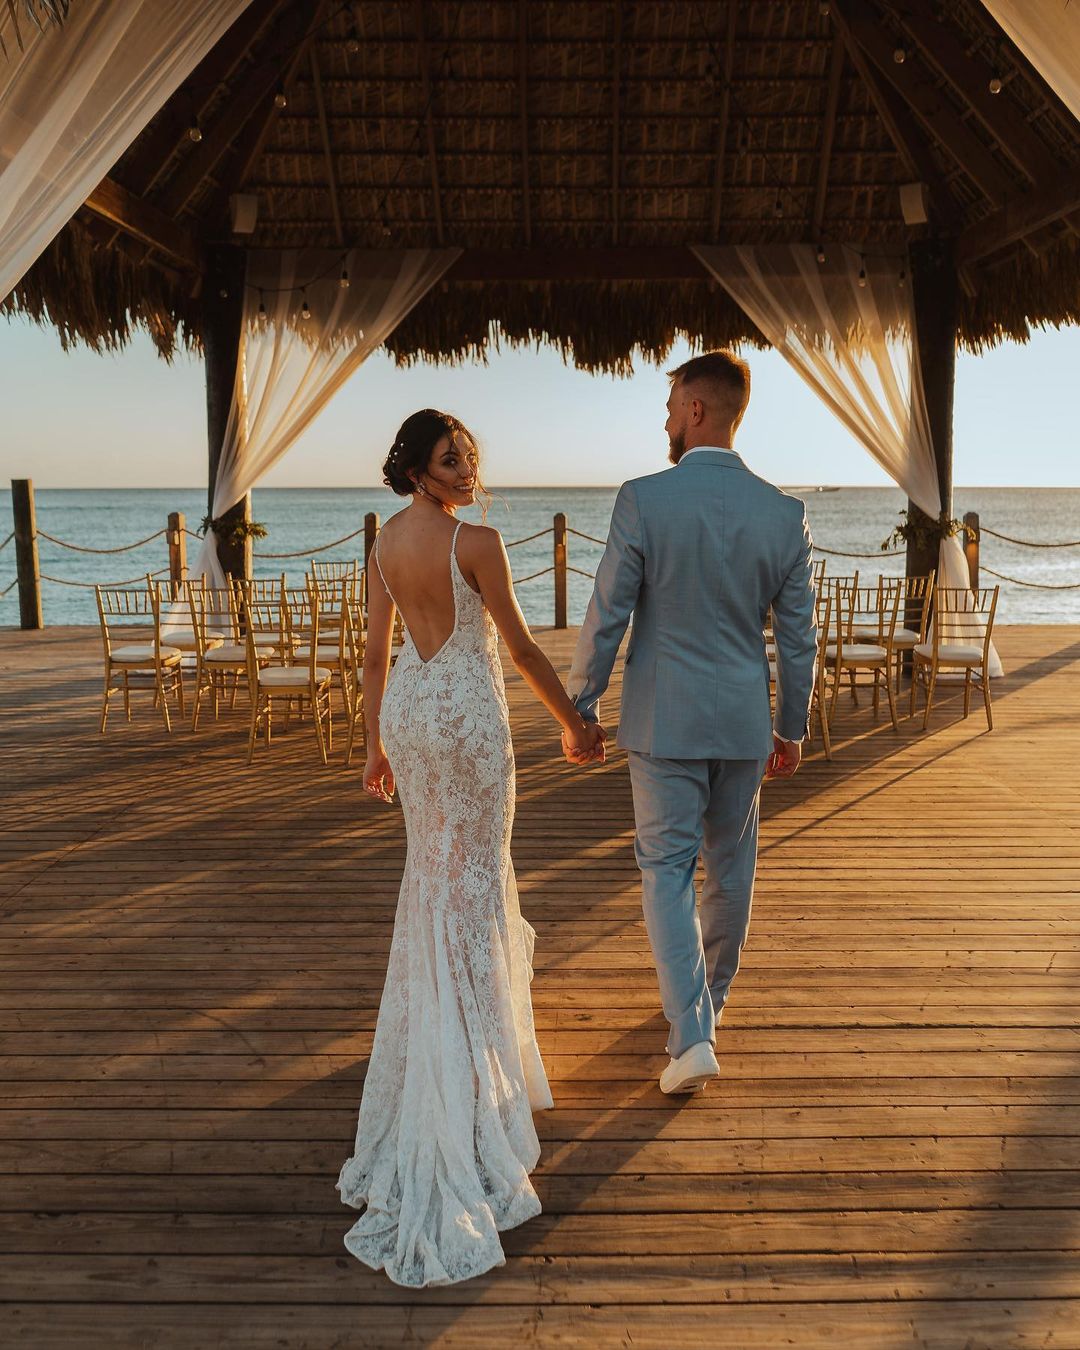 Cheers Travel: realizando o sonho de um destination wedding no Caribe